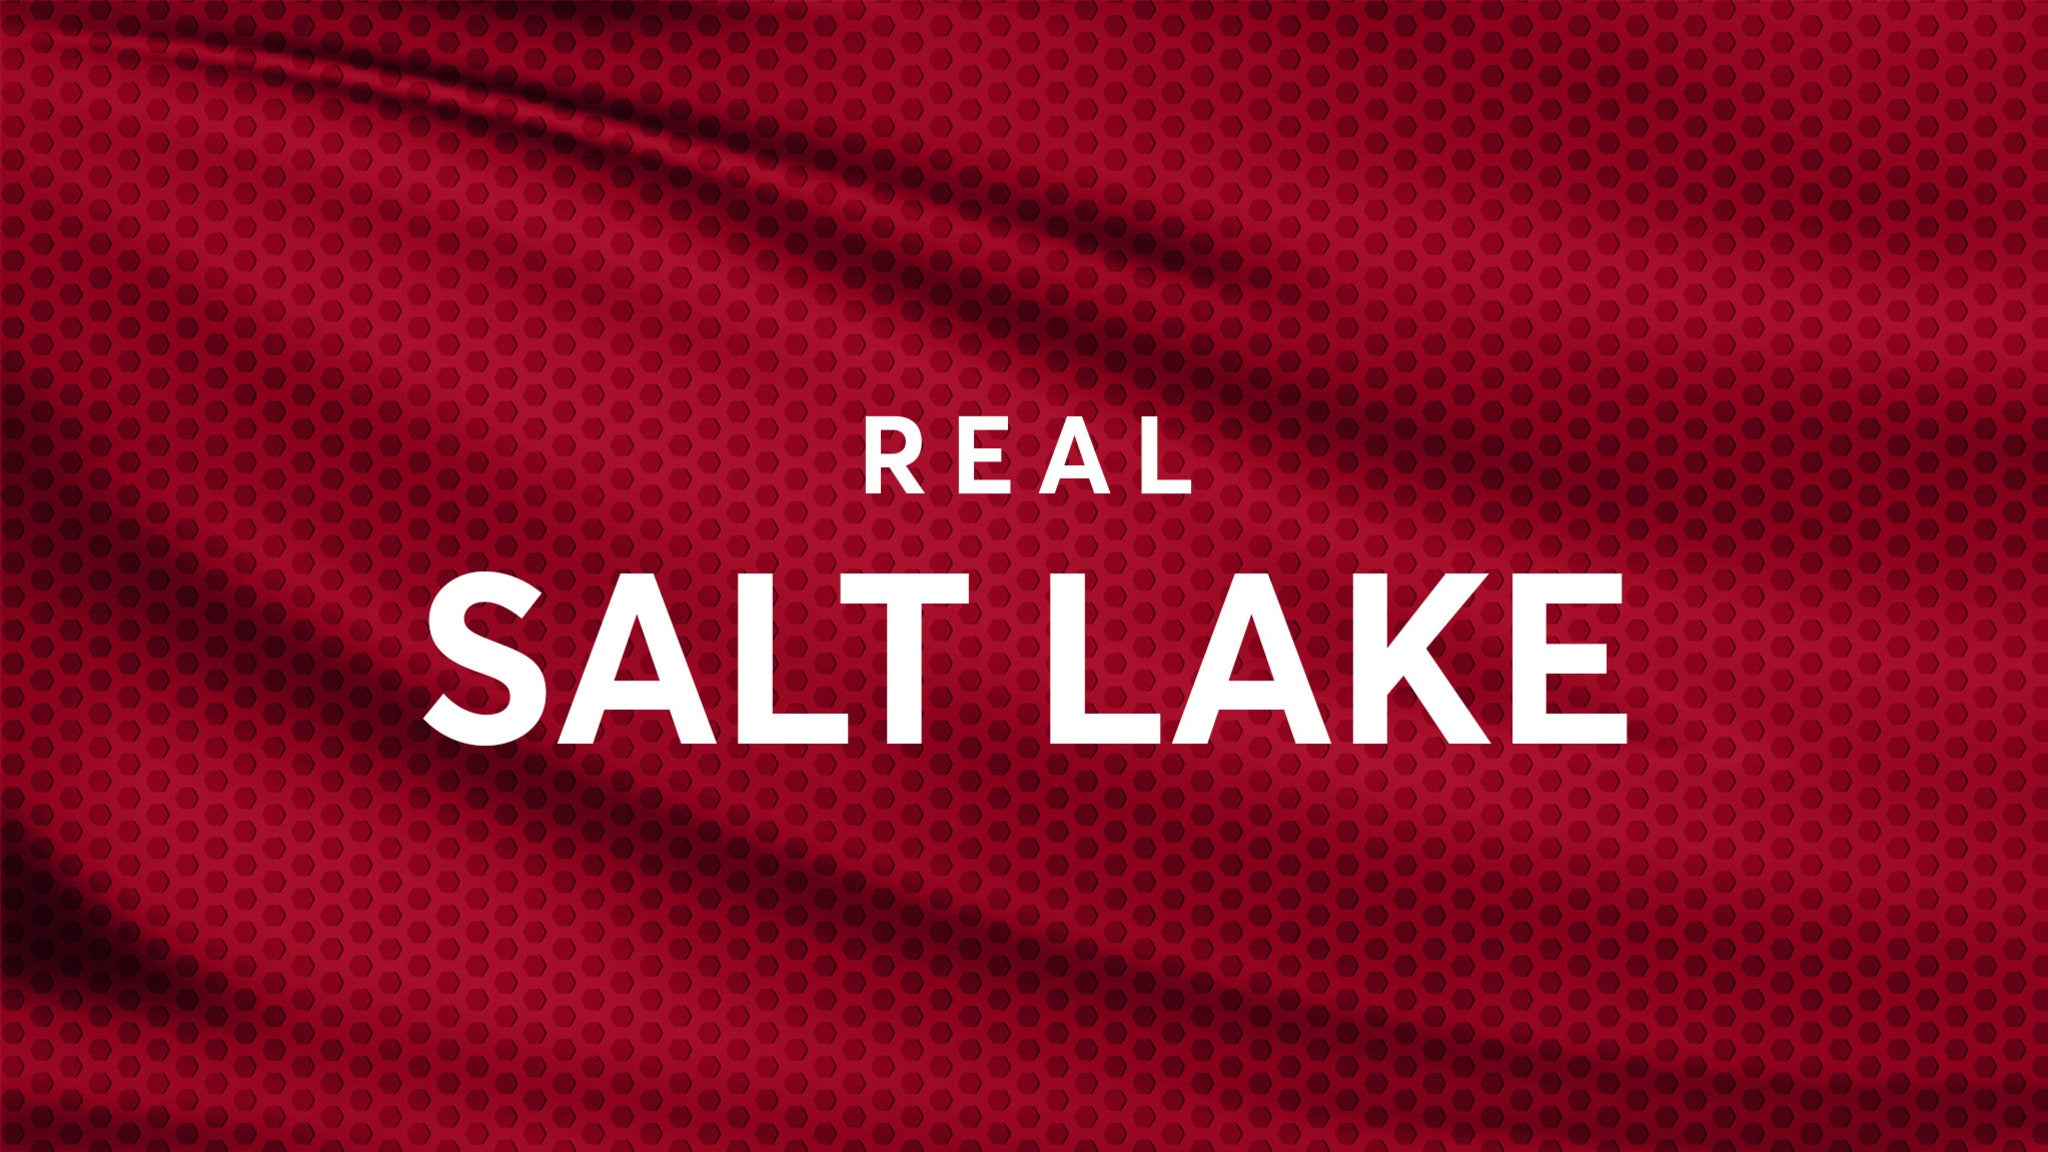 Atlanta United FC vs. Real Salt Lake in Atlanta promo photo for Atlanta United presale offer code